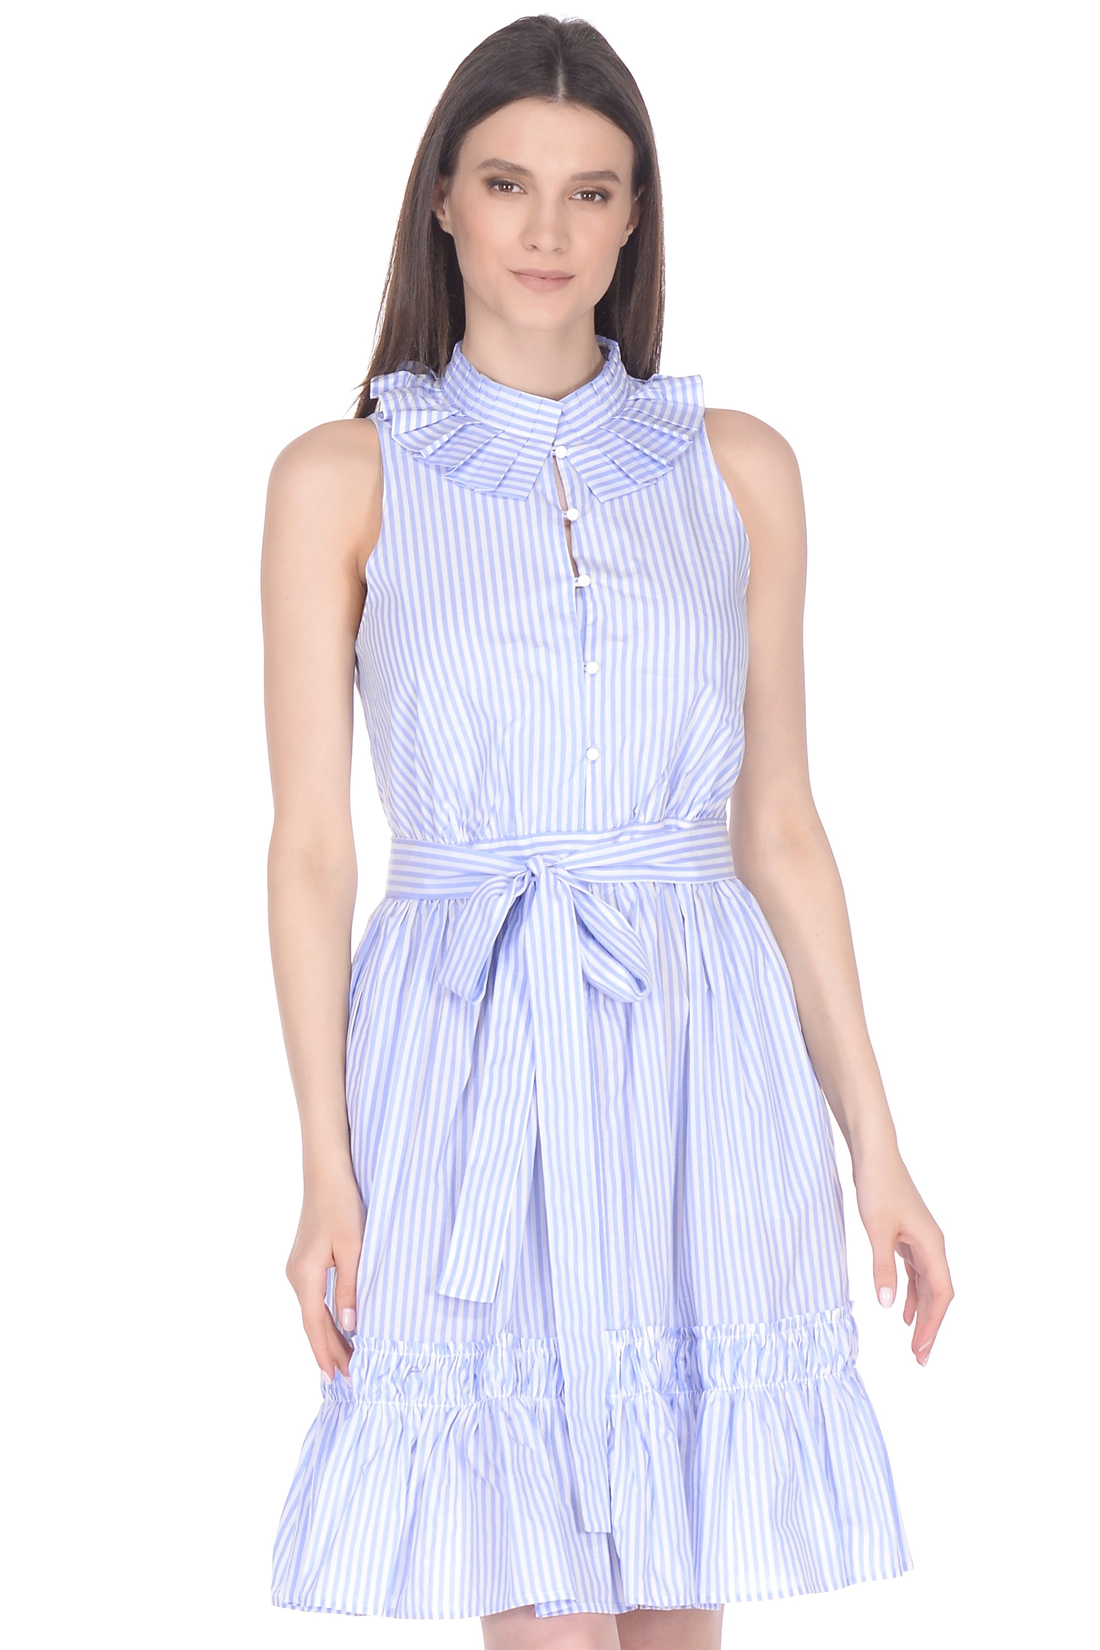 Платье с гофрированным воротником (арт. baon B458032), размер XS, цвет синий Платье с гофрированным воротником (арт. baon B458032) - фото 3